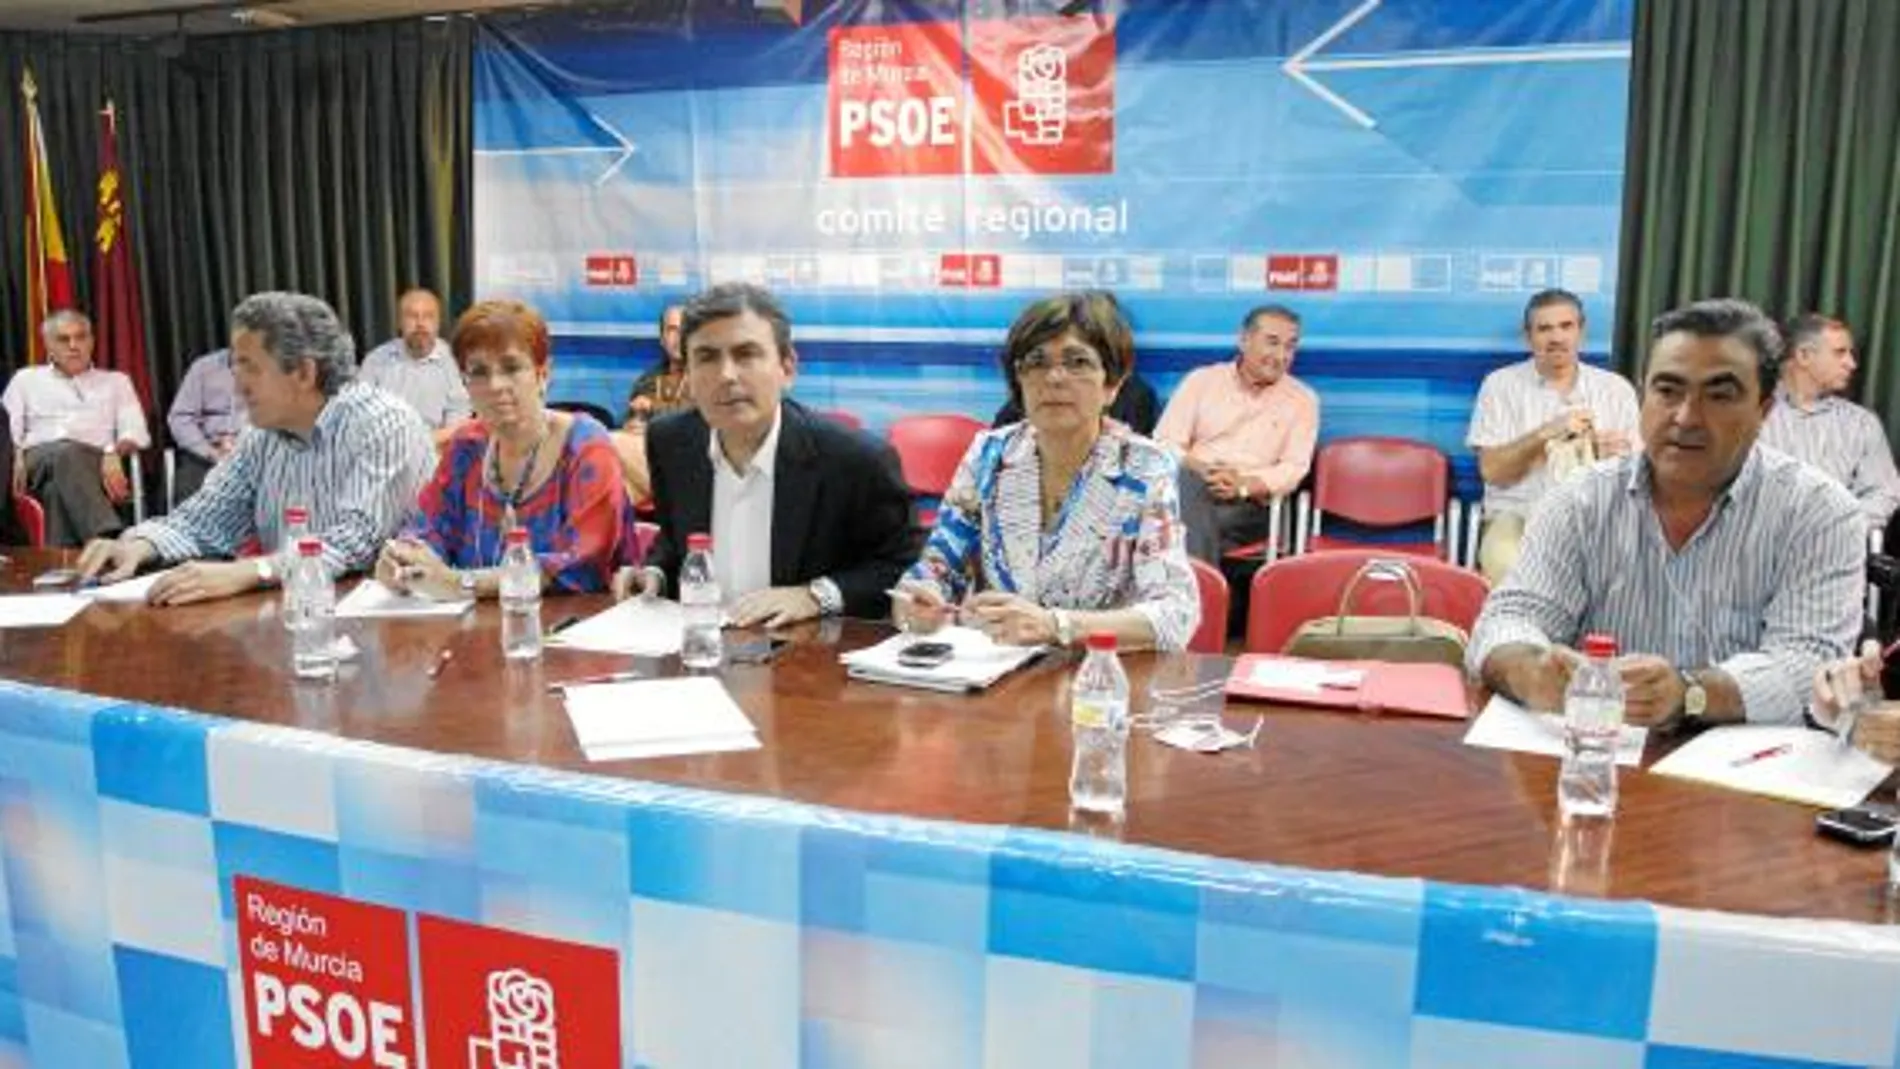 Begoña García Retegui y Pedro Saura presidieron la reunión del Comité Regional del Partido Socialista, al que también asistieron los 250 miembros de éste órgano